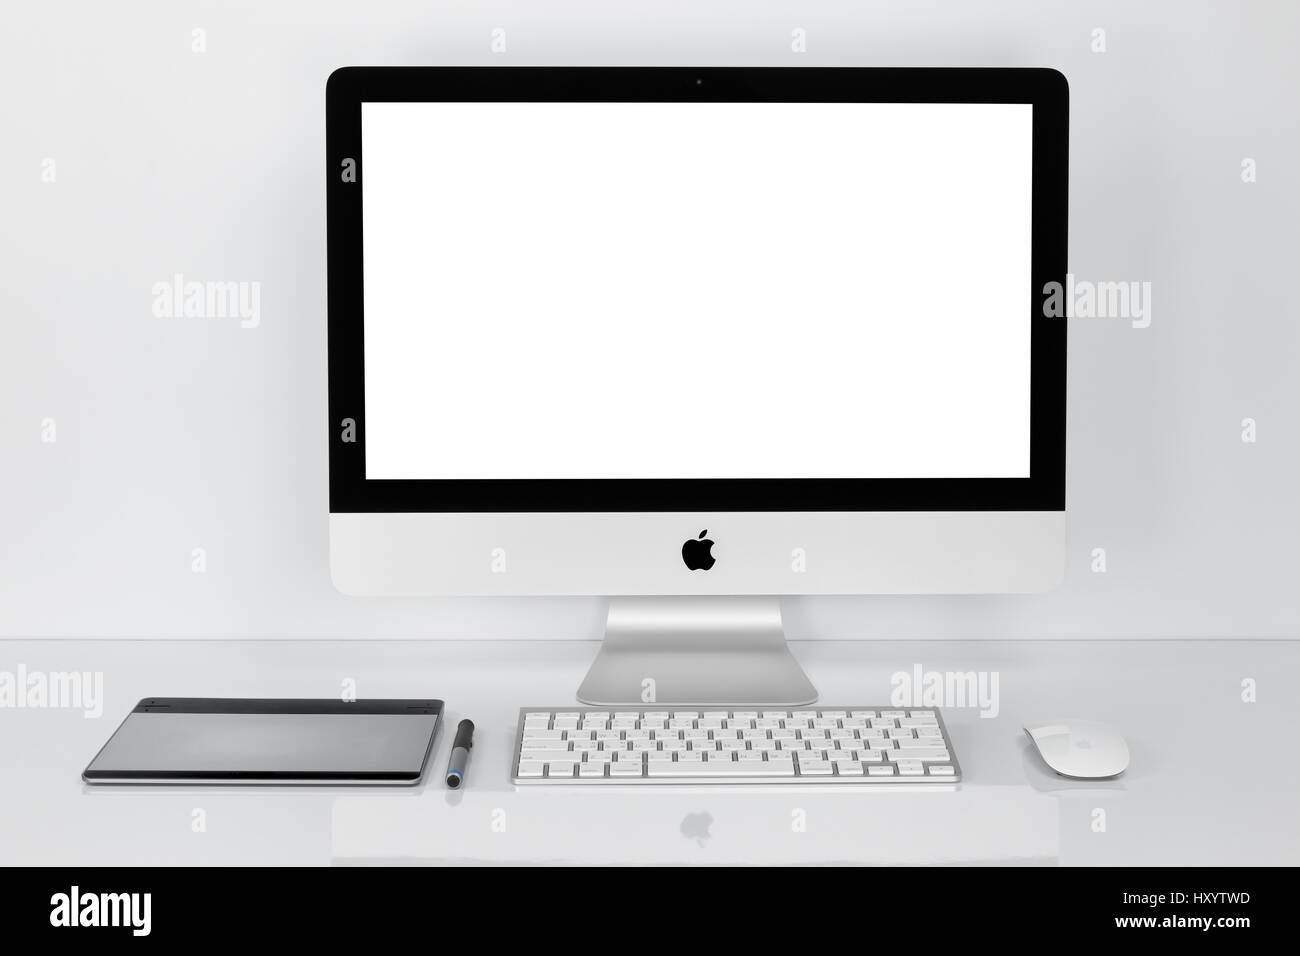 BANGKOK, THAILAND - 1. Februar 2016: Foto des neuen iMac 21.5 mit OS X El Capitan. iMac - Monoblock Serie von Personal Computern, erstellt von Apple In Stockfoto